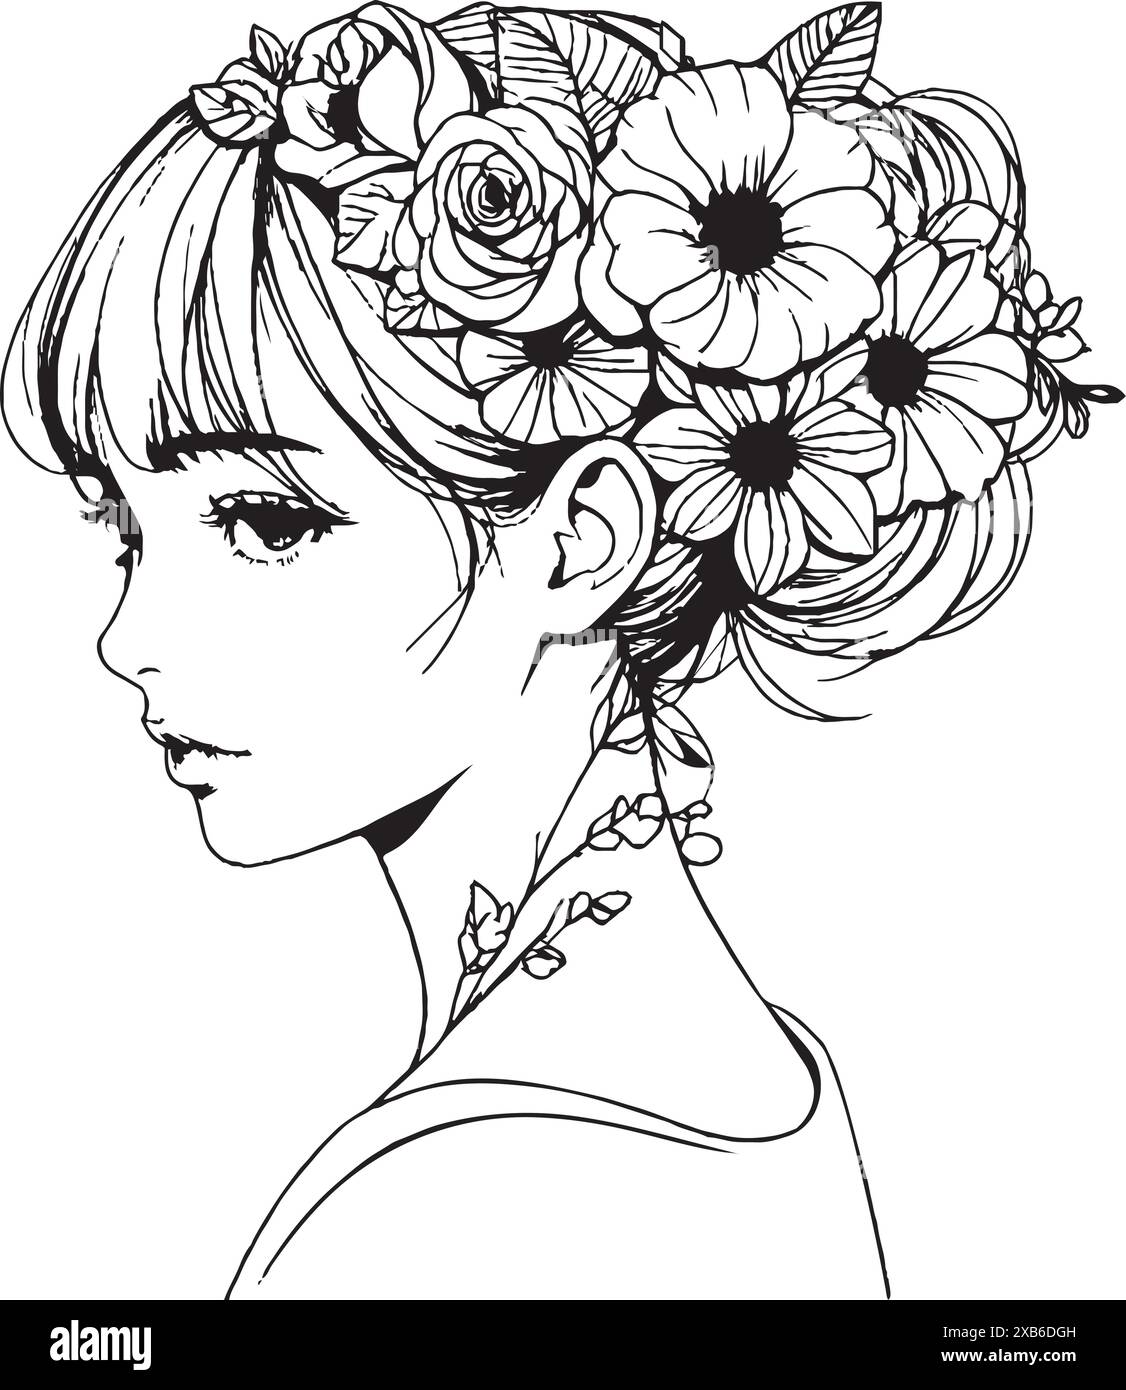 Sofisticato ritratto lineare di una giovane donna con fiori nei capelli, realizzato con eleganti linee nere, isolato. Le illustrazioni in stile boho sono entrambe g Illustrazione Vettoriale